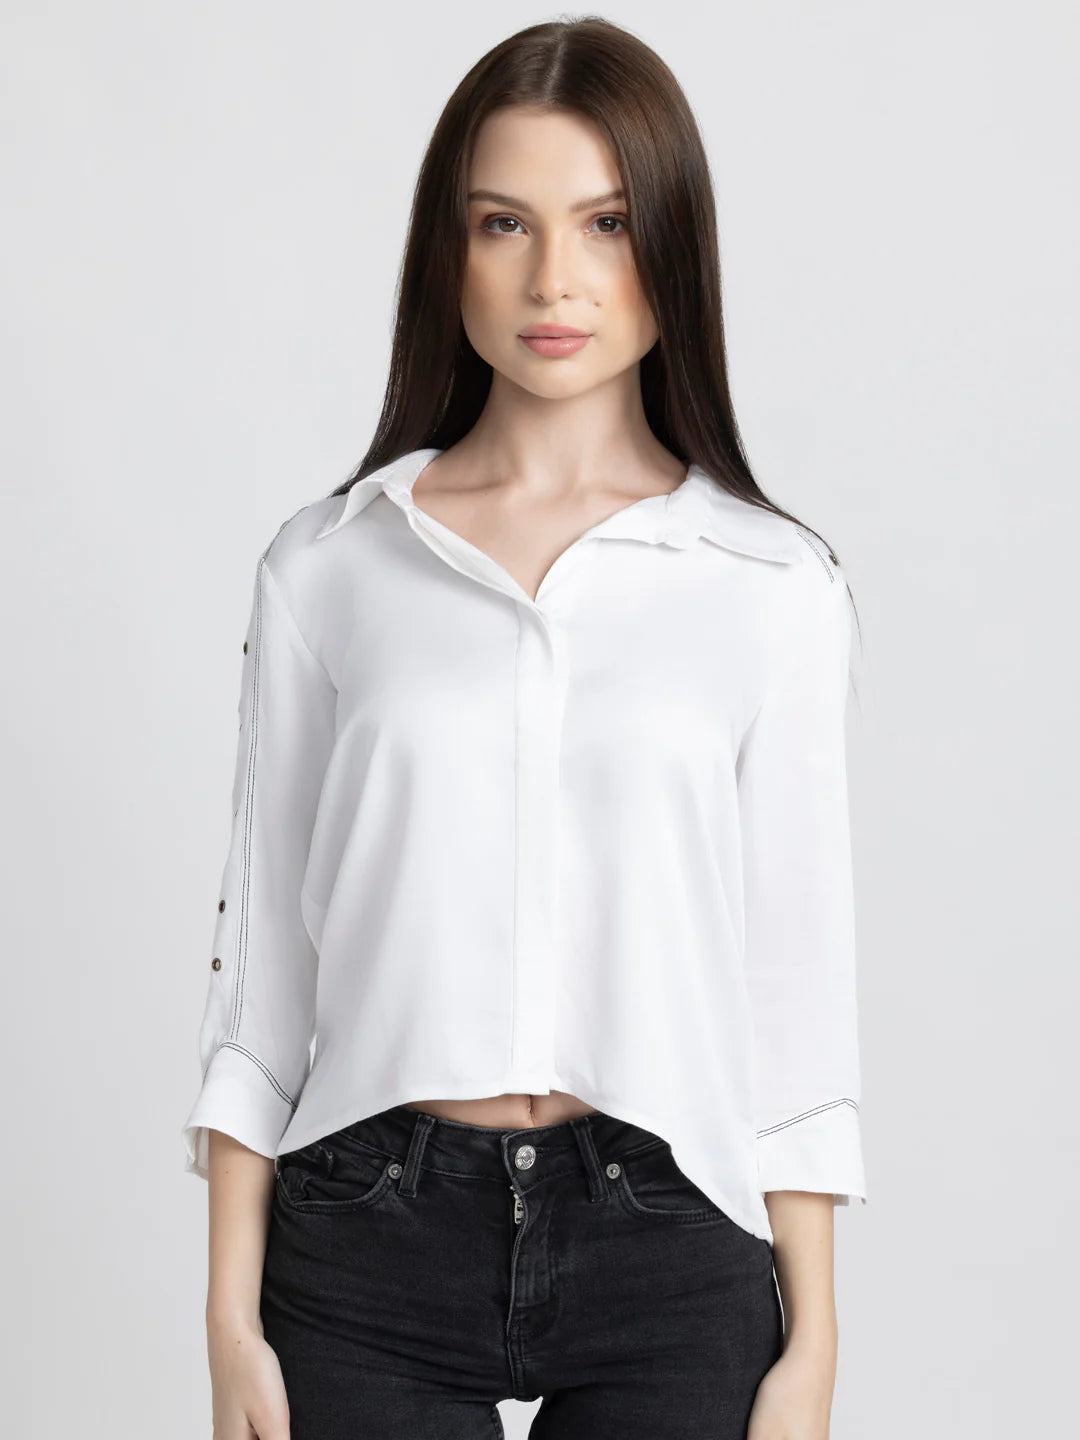 White Party Shirt for Women | Elegant White Eyelet Embellished Shirt